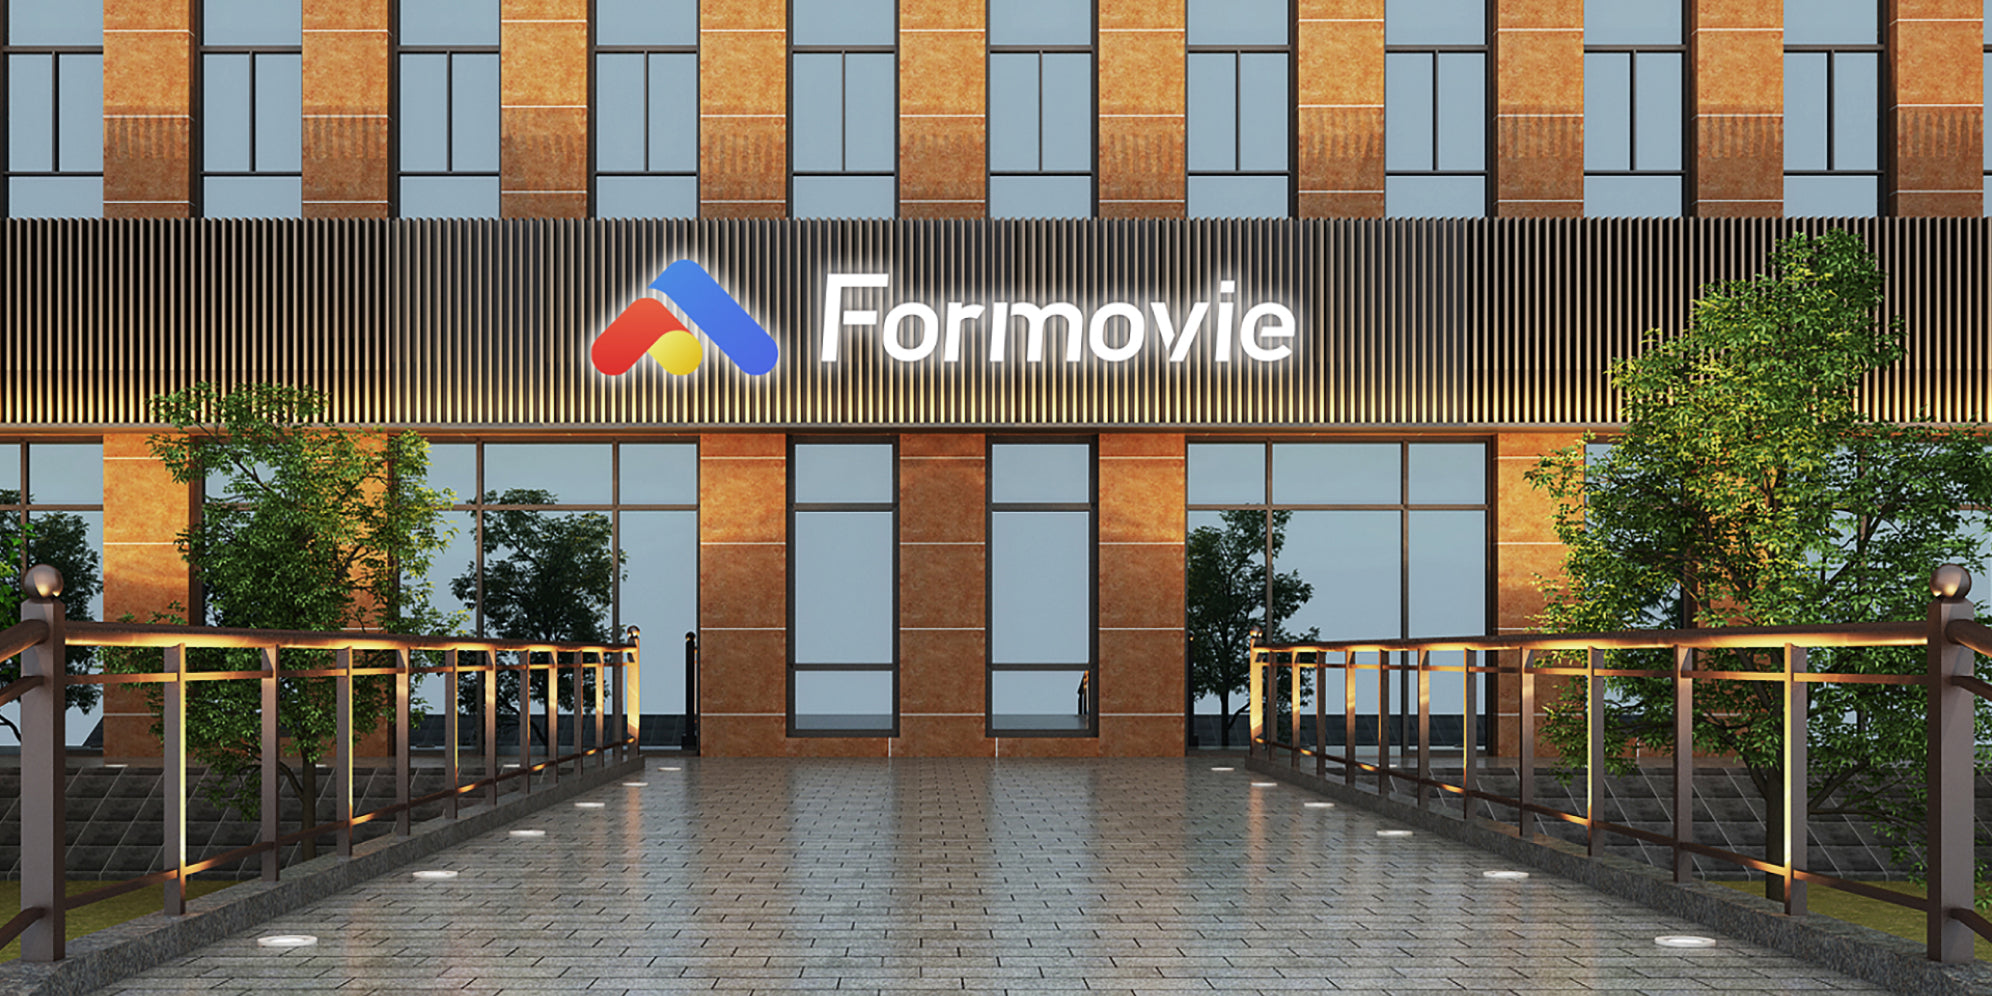 Formovie registered at 2016